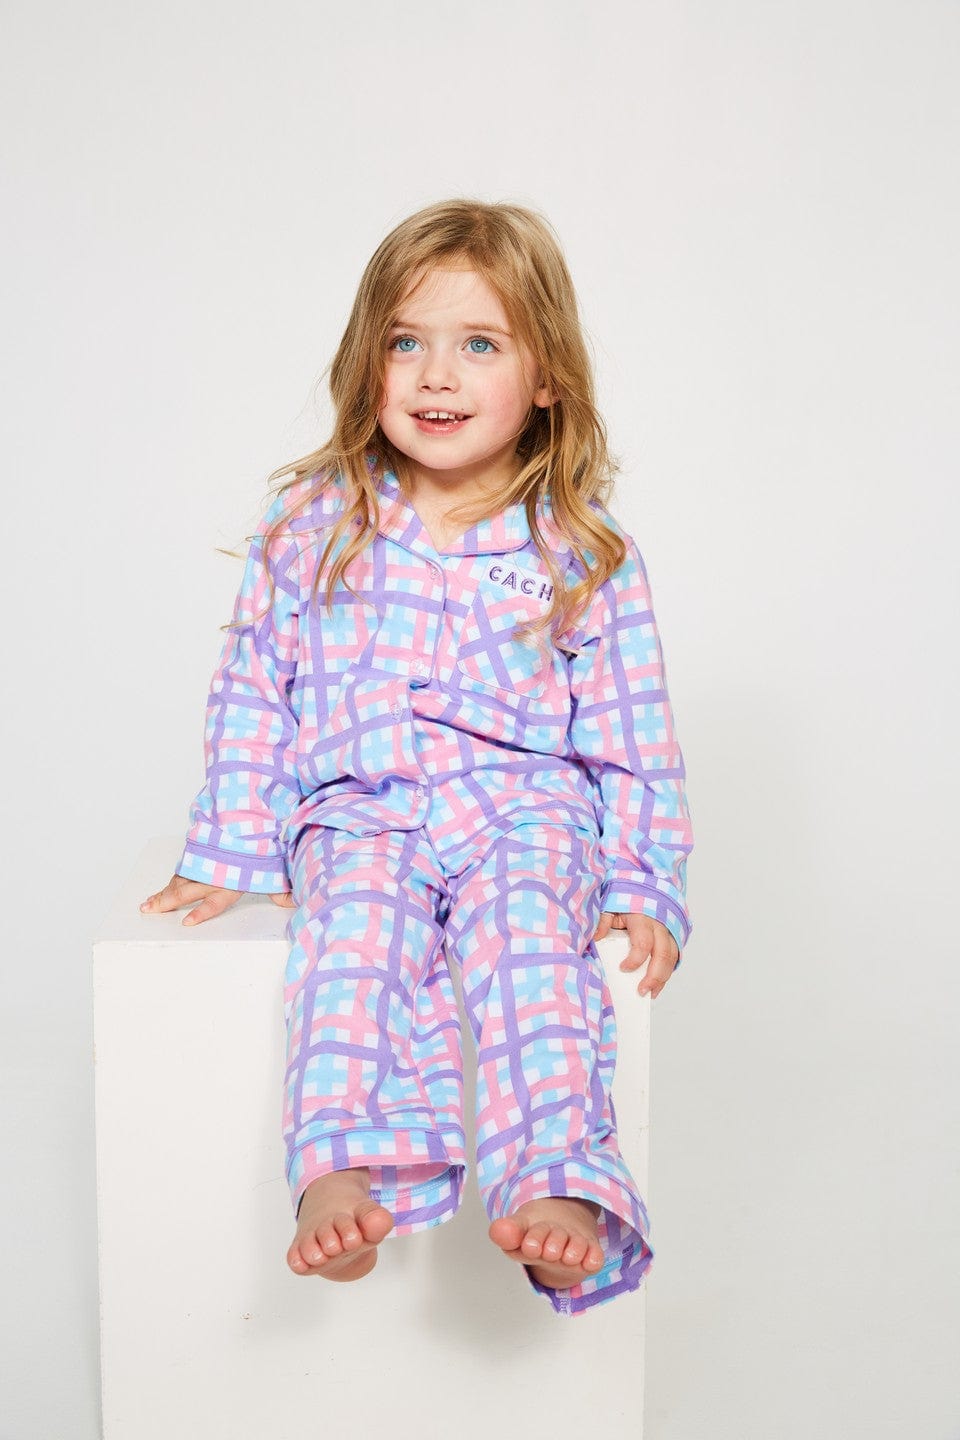 Cachia Charlotte Pajamas